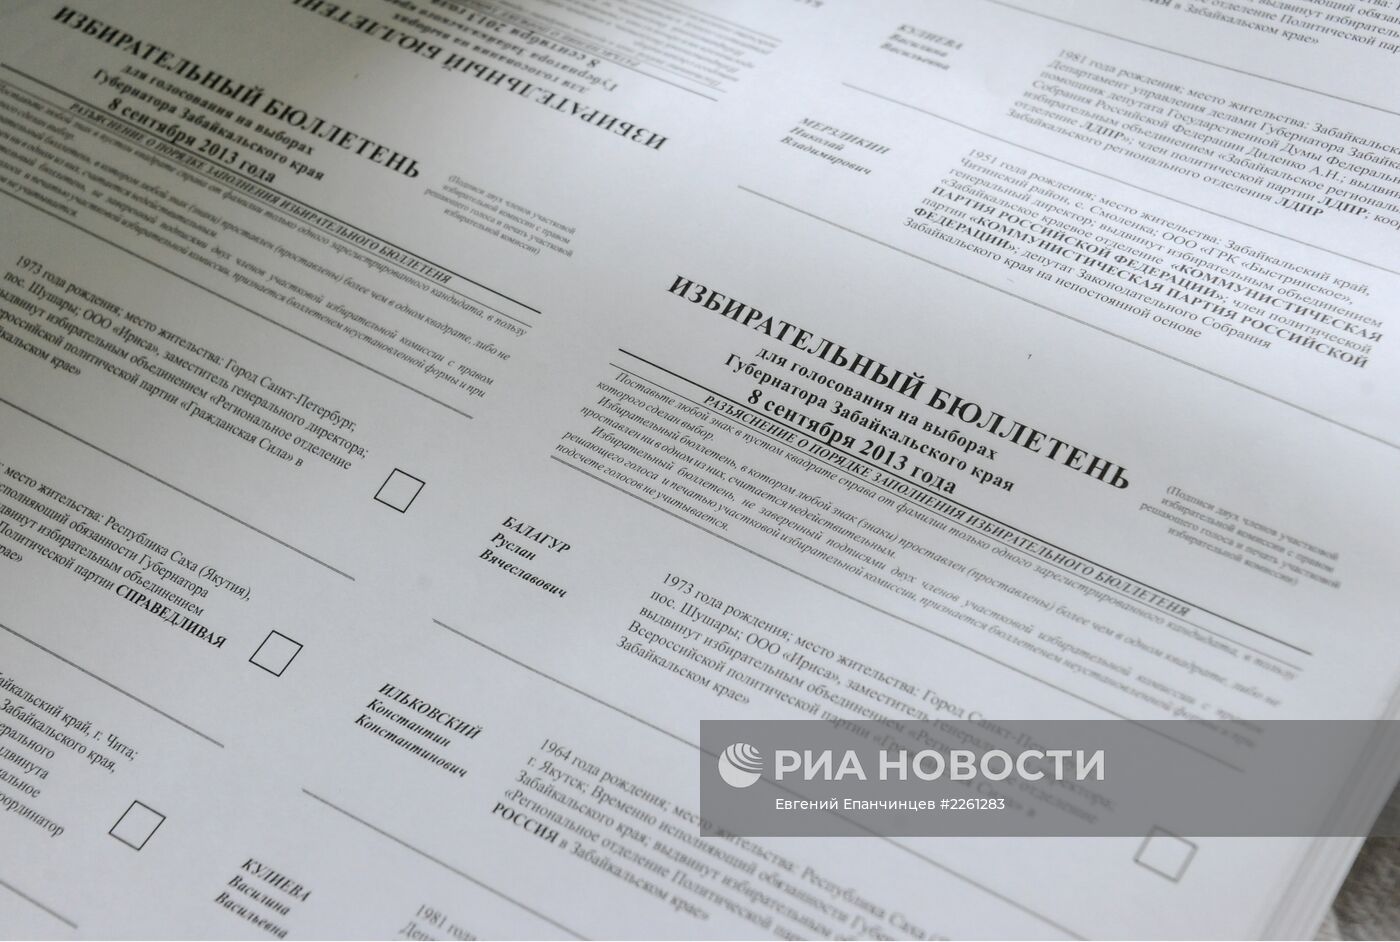 Печать бюллетеней для выборов губернатора Забайкальского края